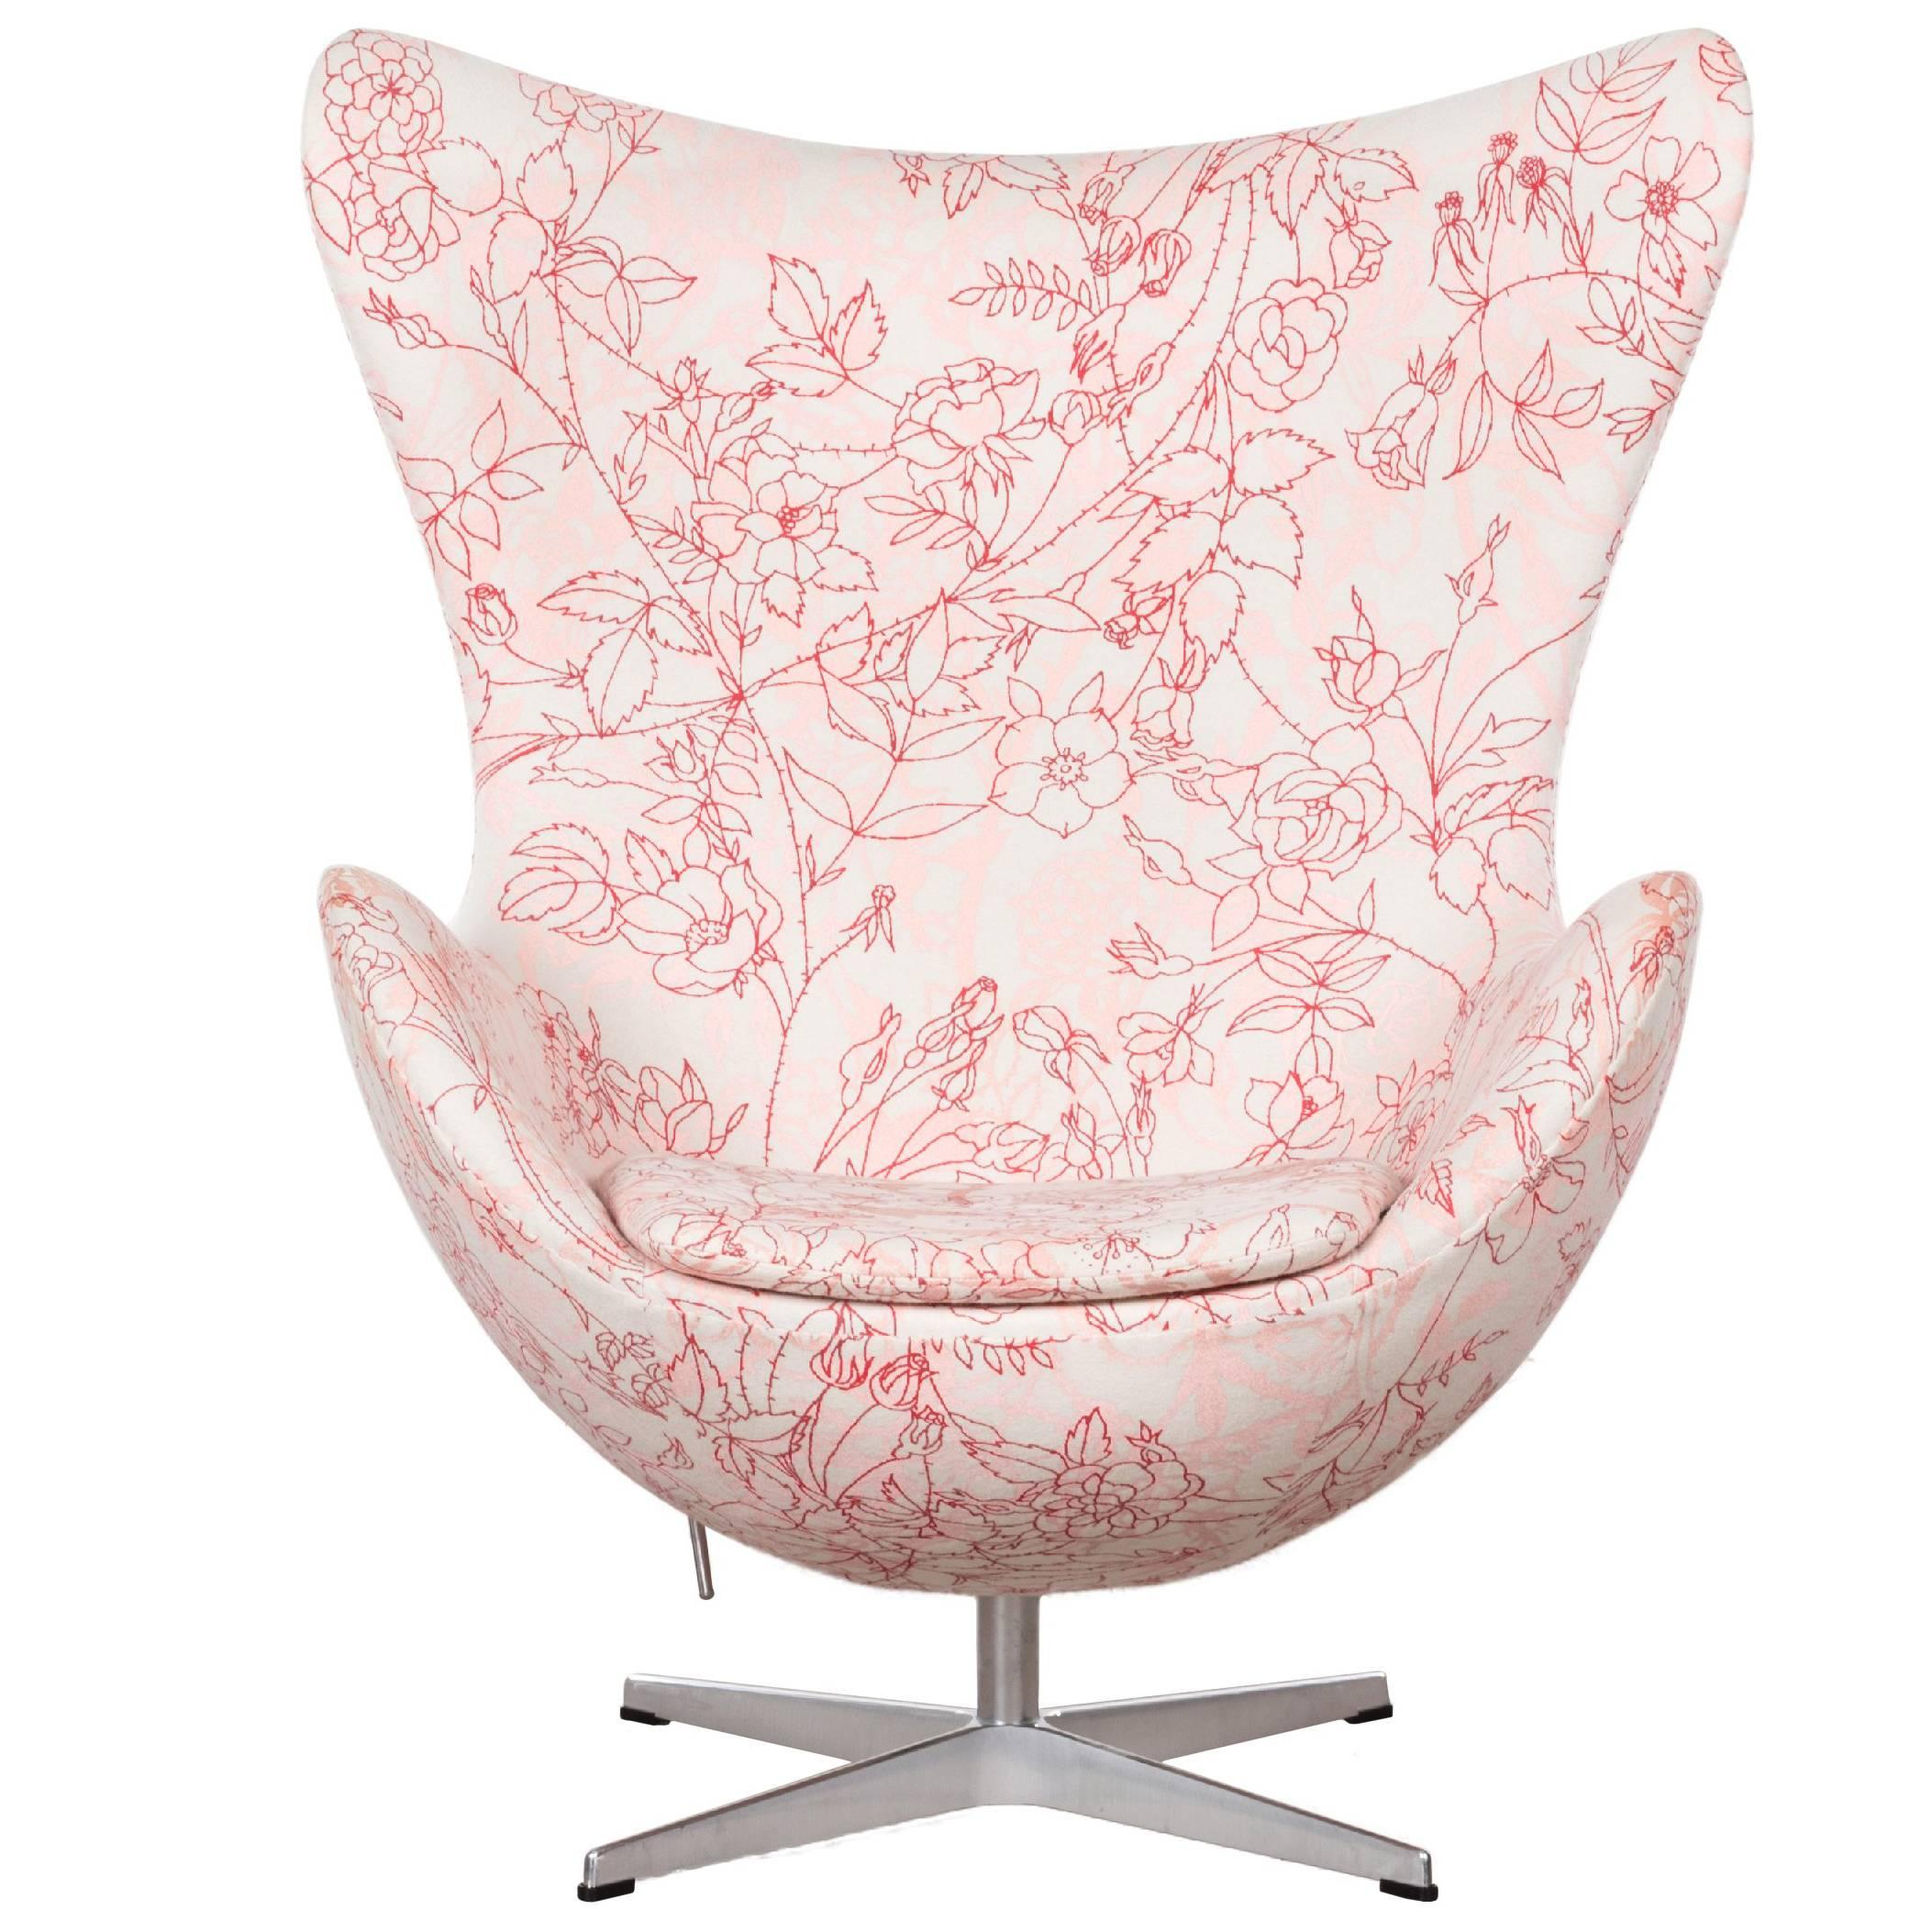 Arne Jacobsen Egg Chair in Elegent Fabric with Rose Motifv for Fritz Hansen